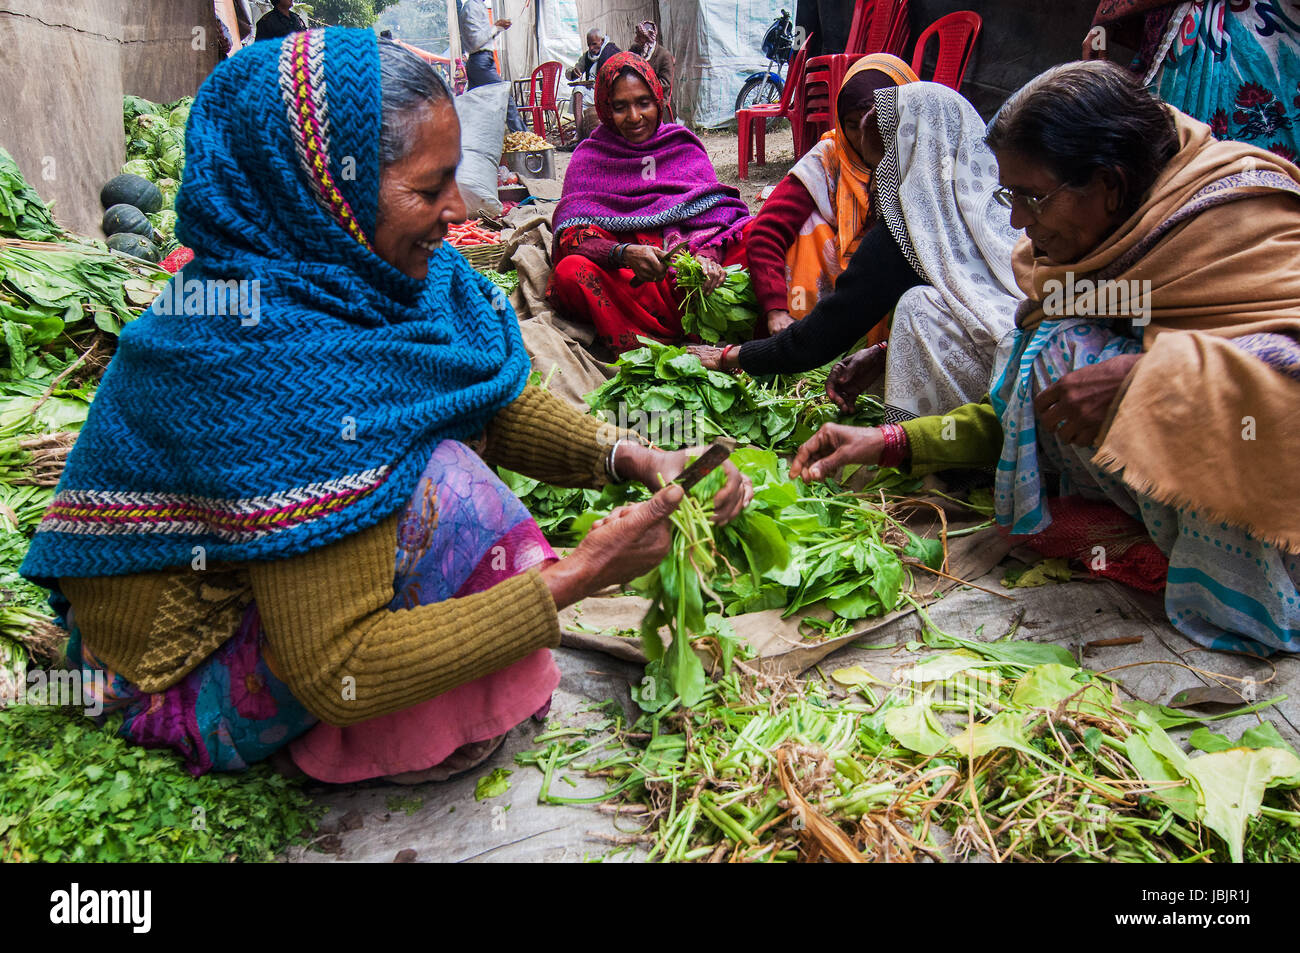 KOLKATA, INDE - Le 12 janvier 2014 : les femmes rurales indiennes légumes coupe Babughat au camp de transit. Chaque année fidèles de toute l'Inde visites Gangasagar pour echelle sainte et séjours Babughat en transit. Banque D'Images